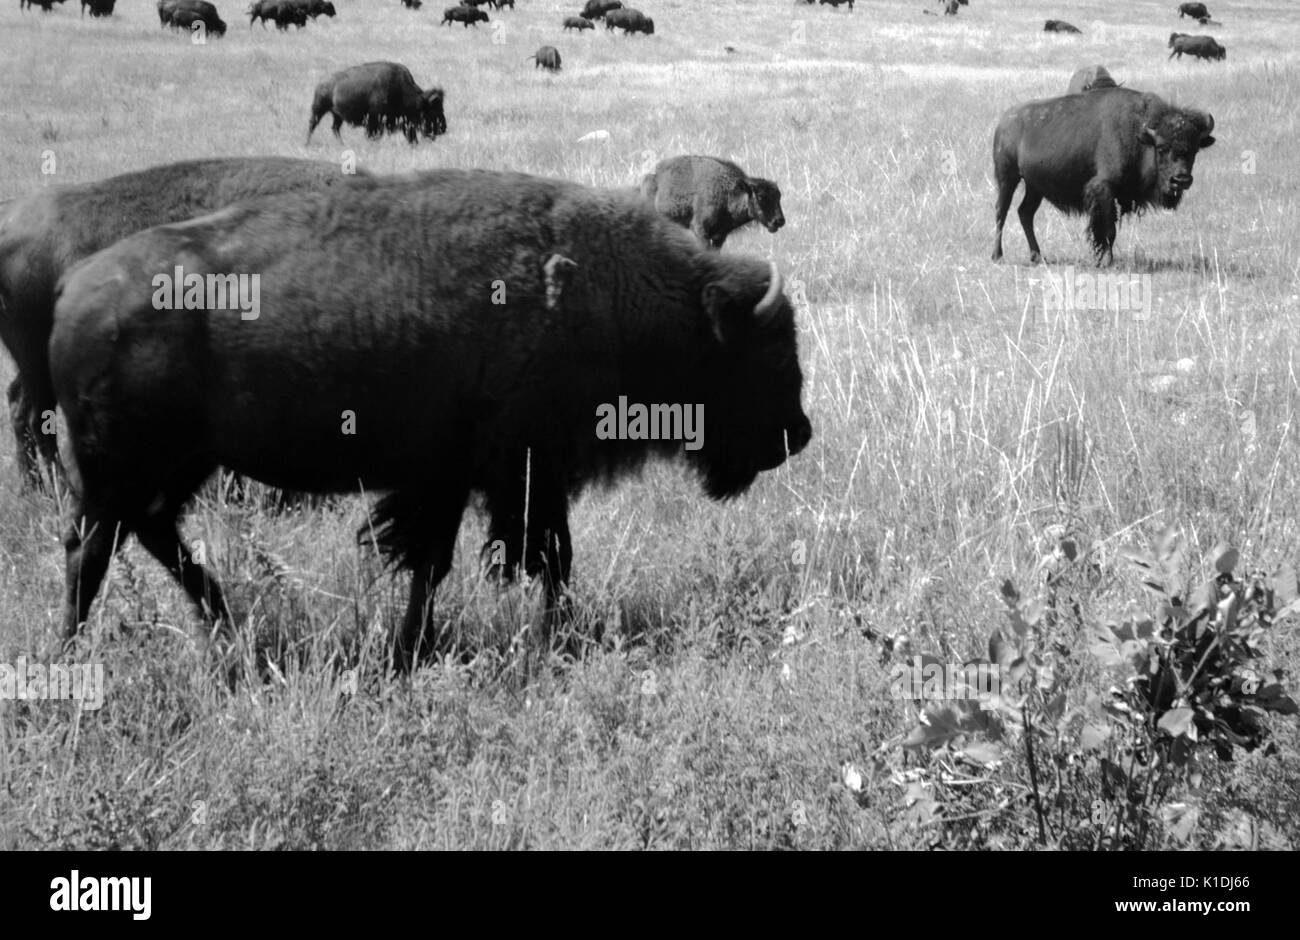 Un troupeau de bisons peut être vu le pâturage et debout dans les champs, les adultes et les jeunes peuvent être vus, plusieurs buffalo sont proches de la photographe, Wyoming, 1975. Banque D'Images